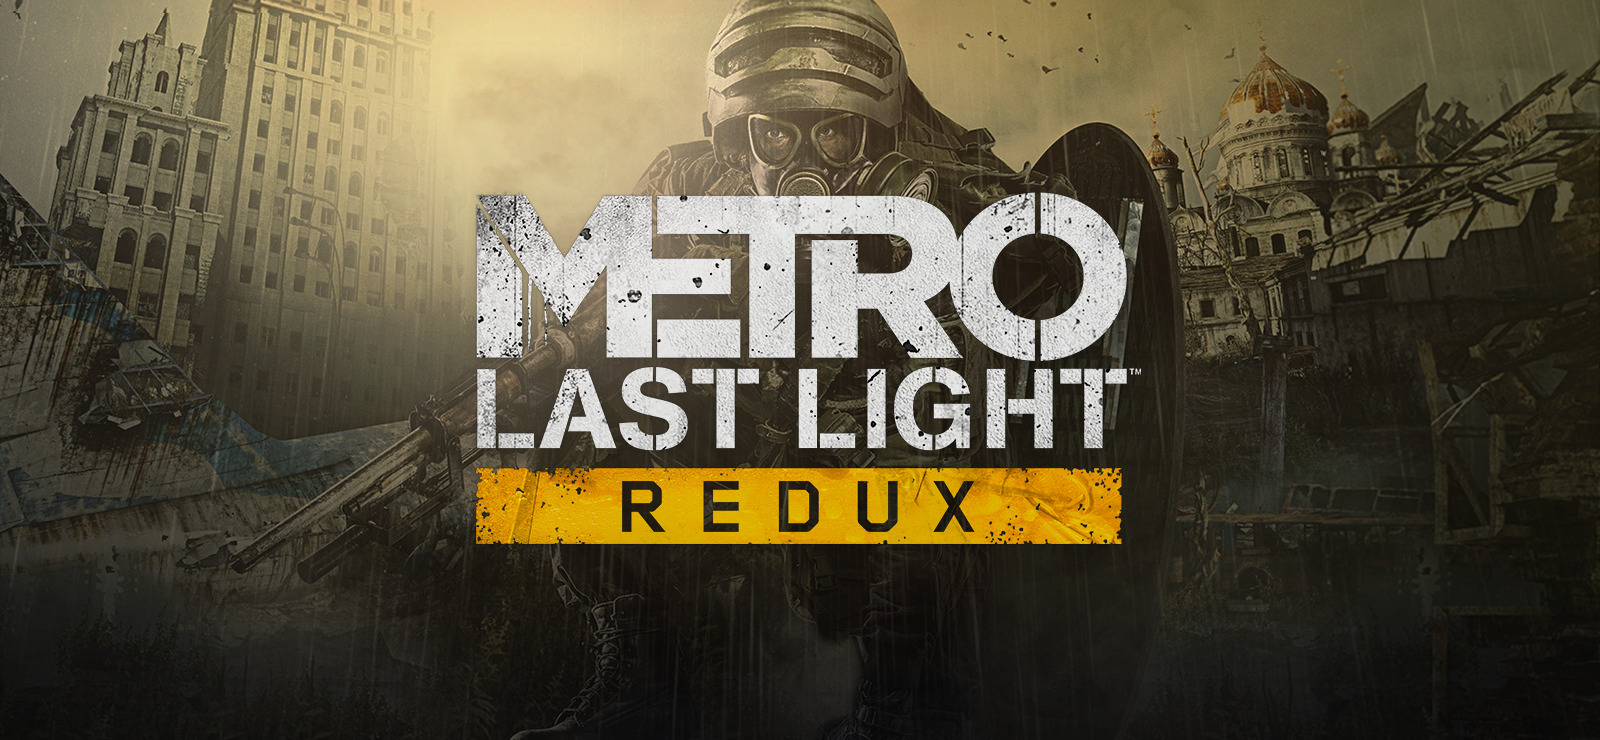 Metro Last Light Full Game Mobile for Free